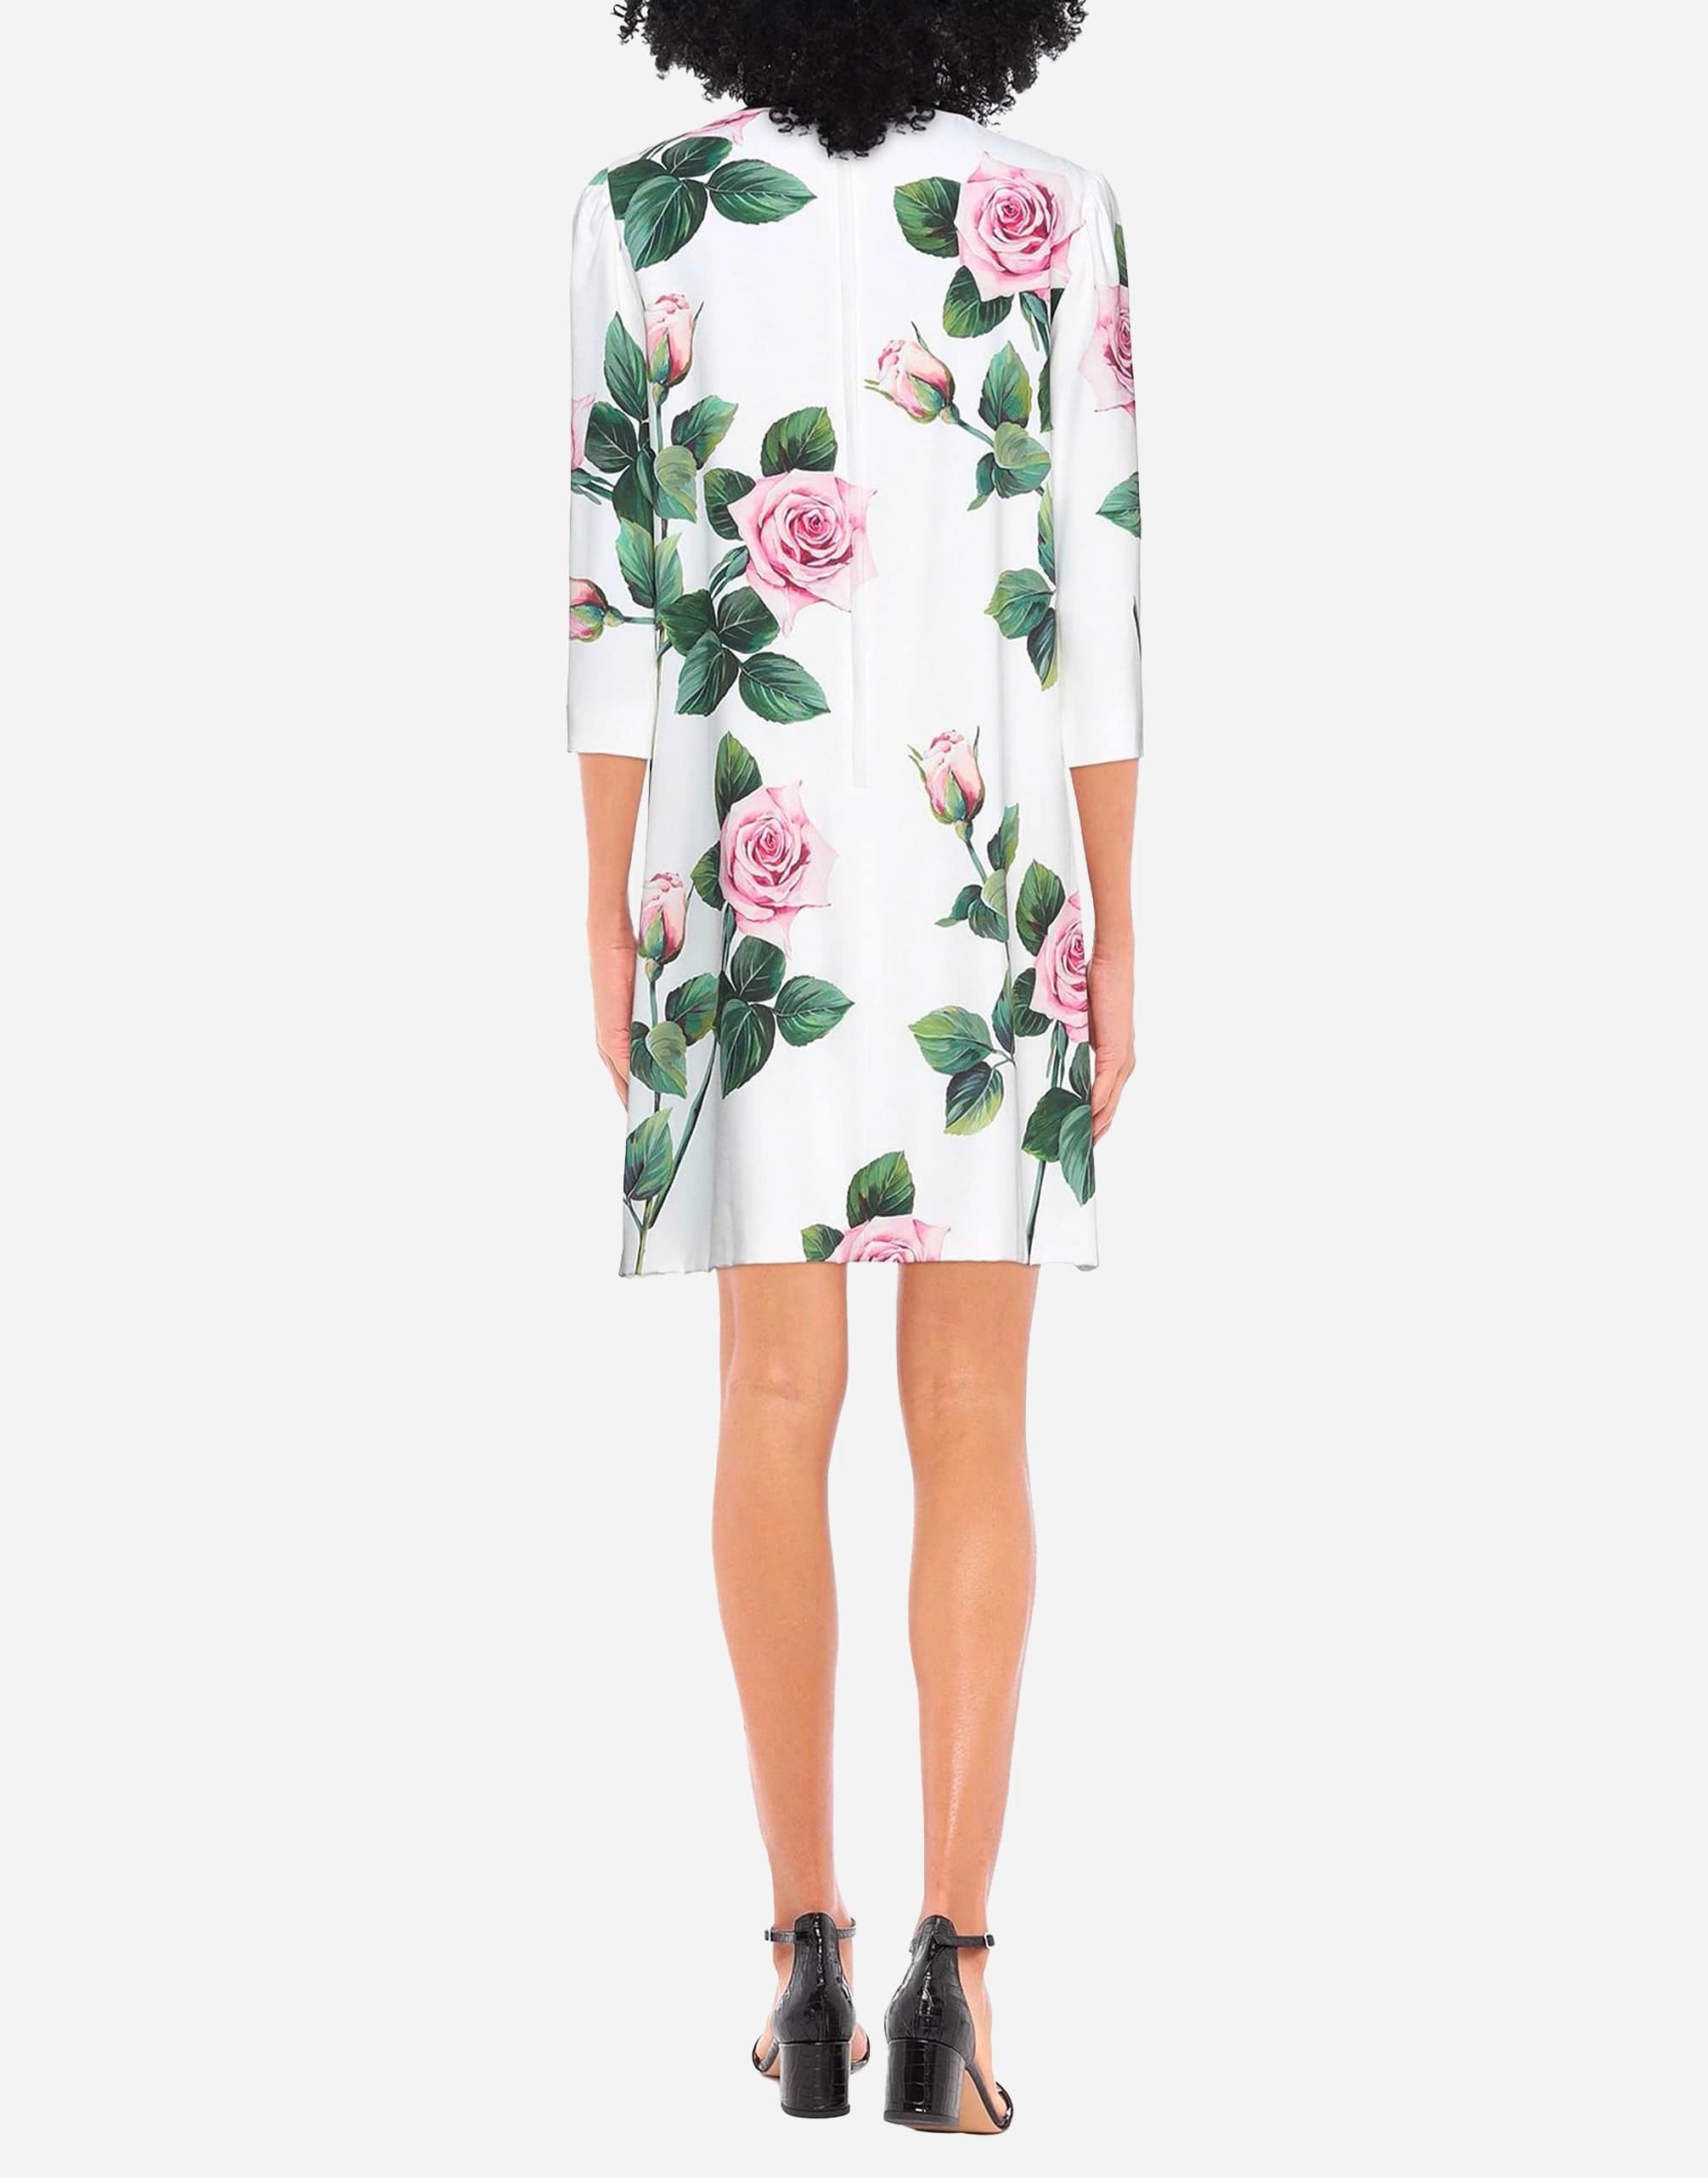 Tropical Rose printed Short Dress